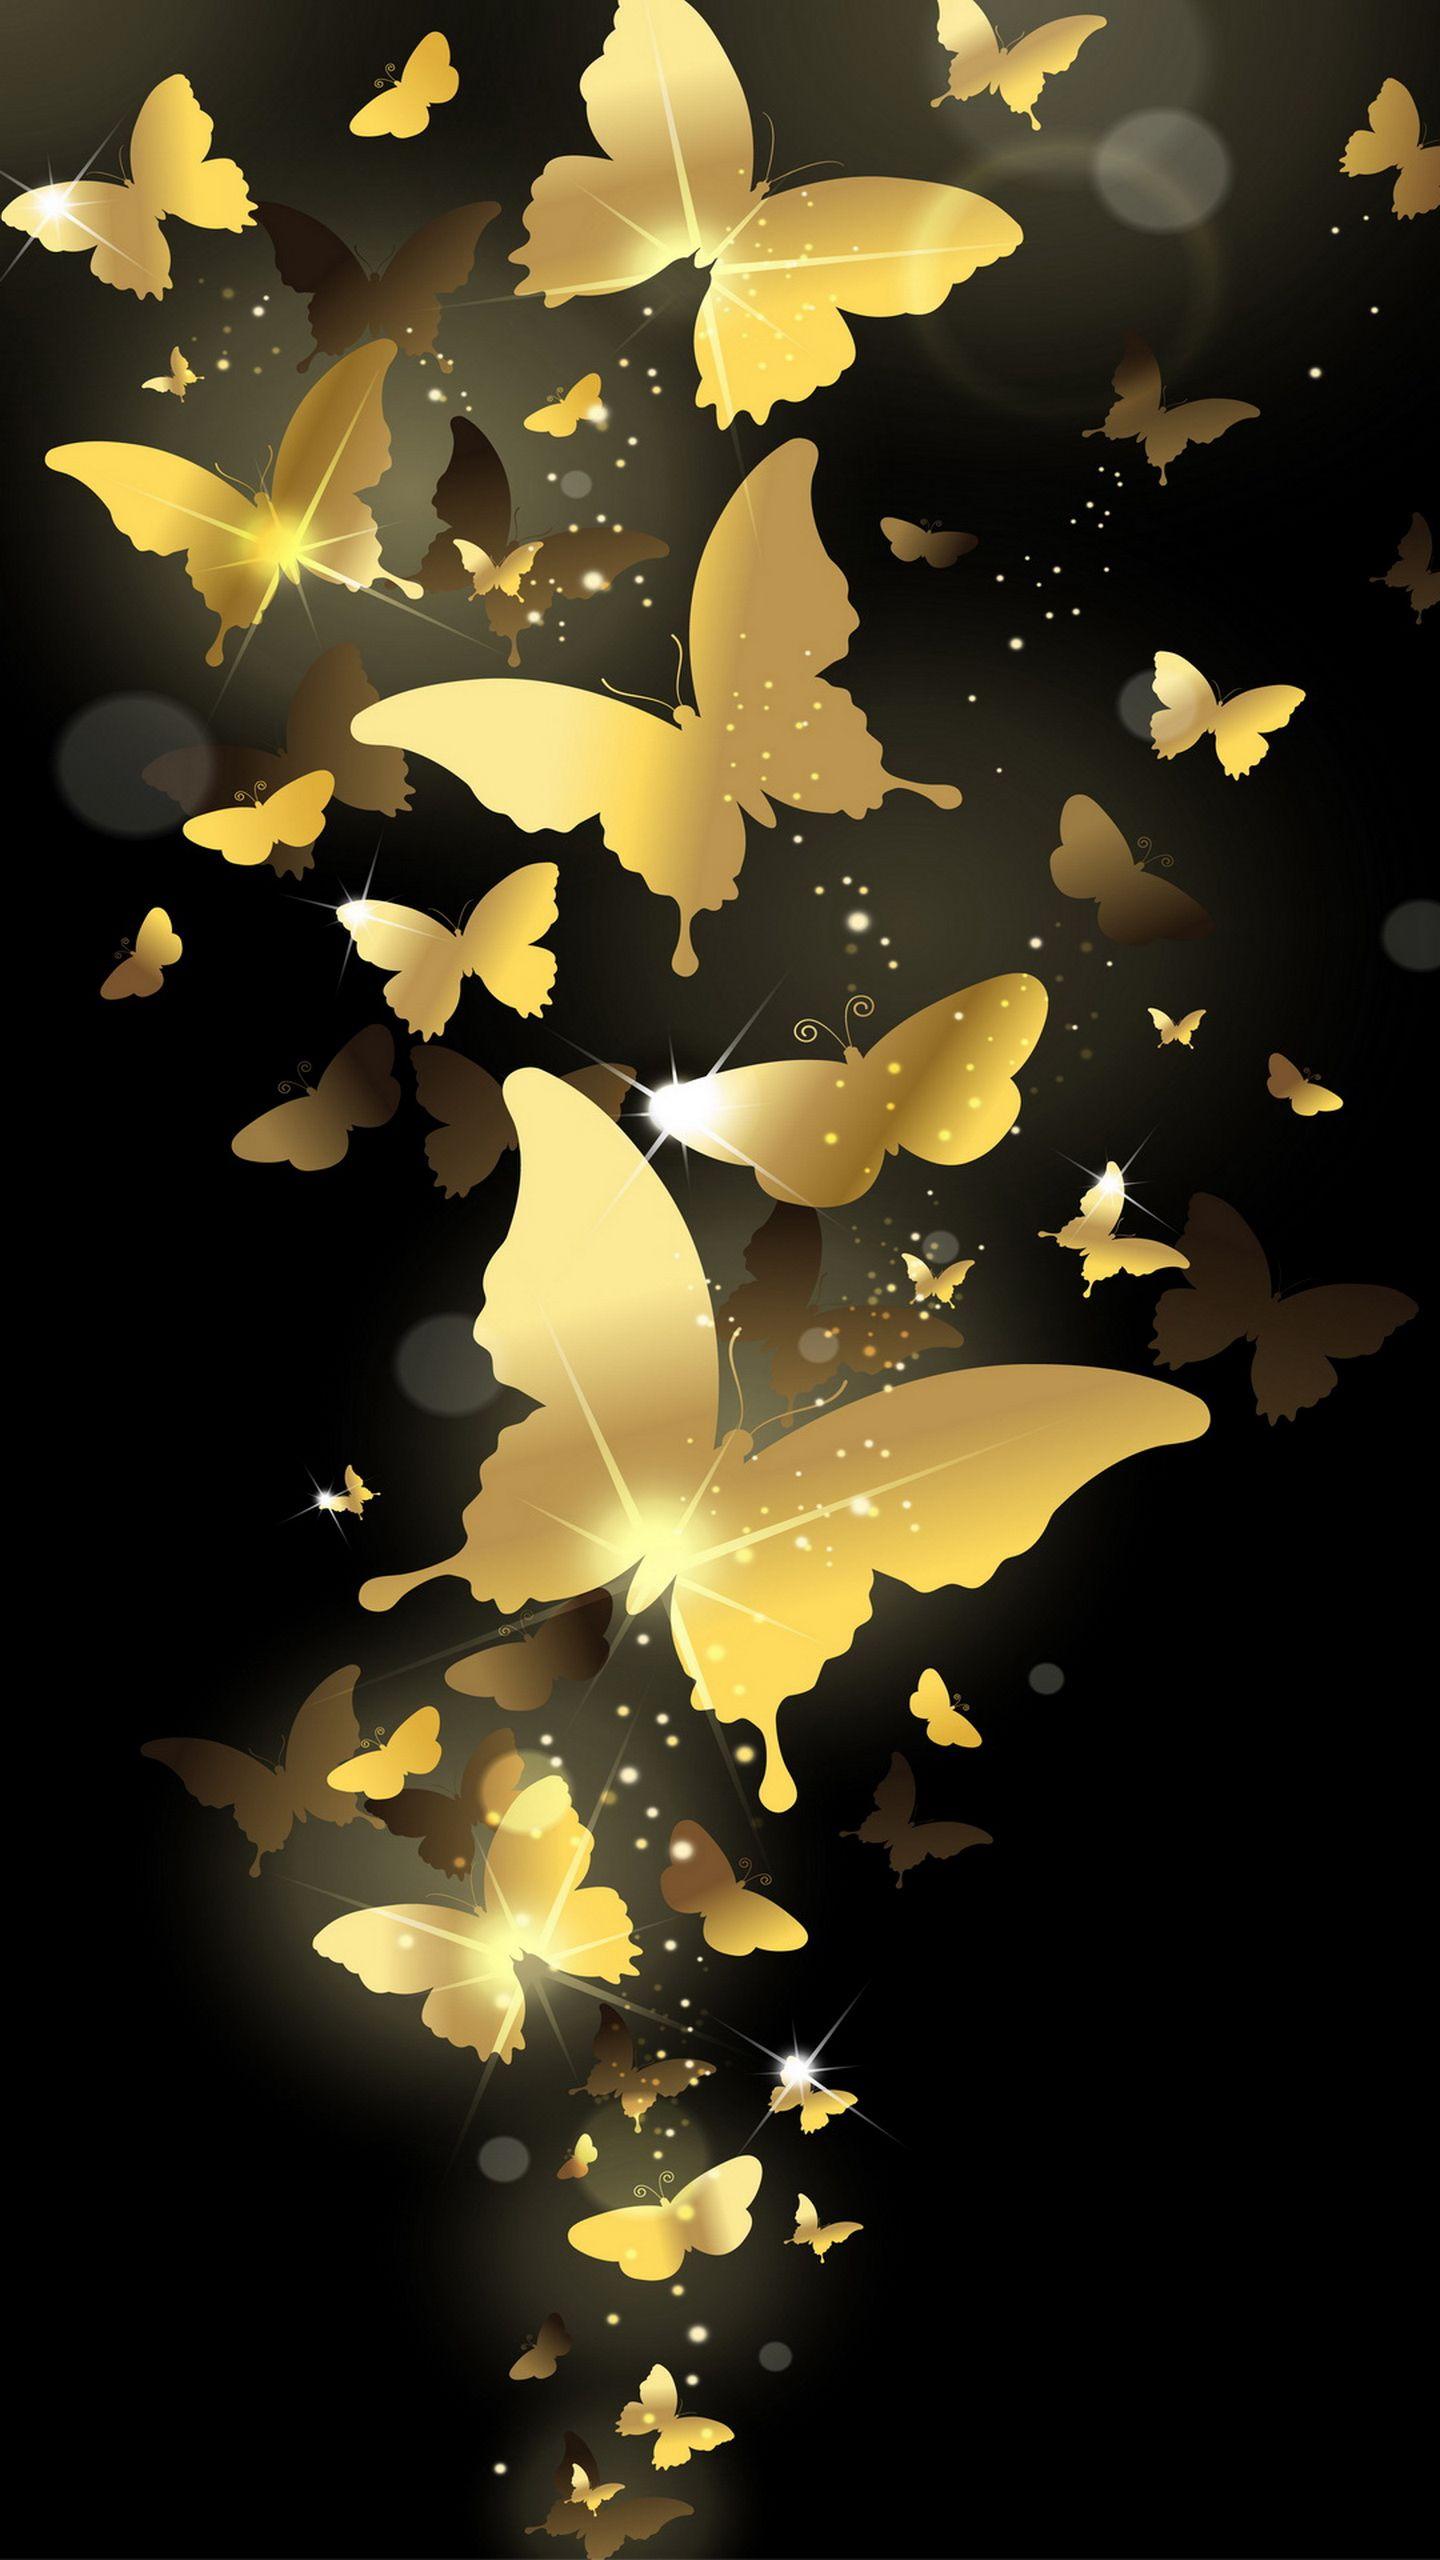 Flying Golden Butterflies Lockscreen Lock Screen 1440x2560 Samsung